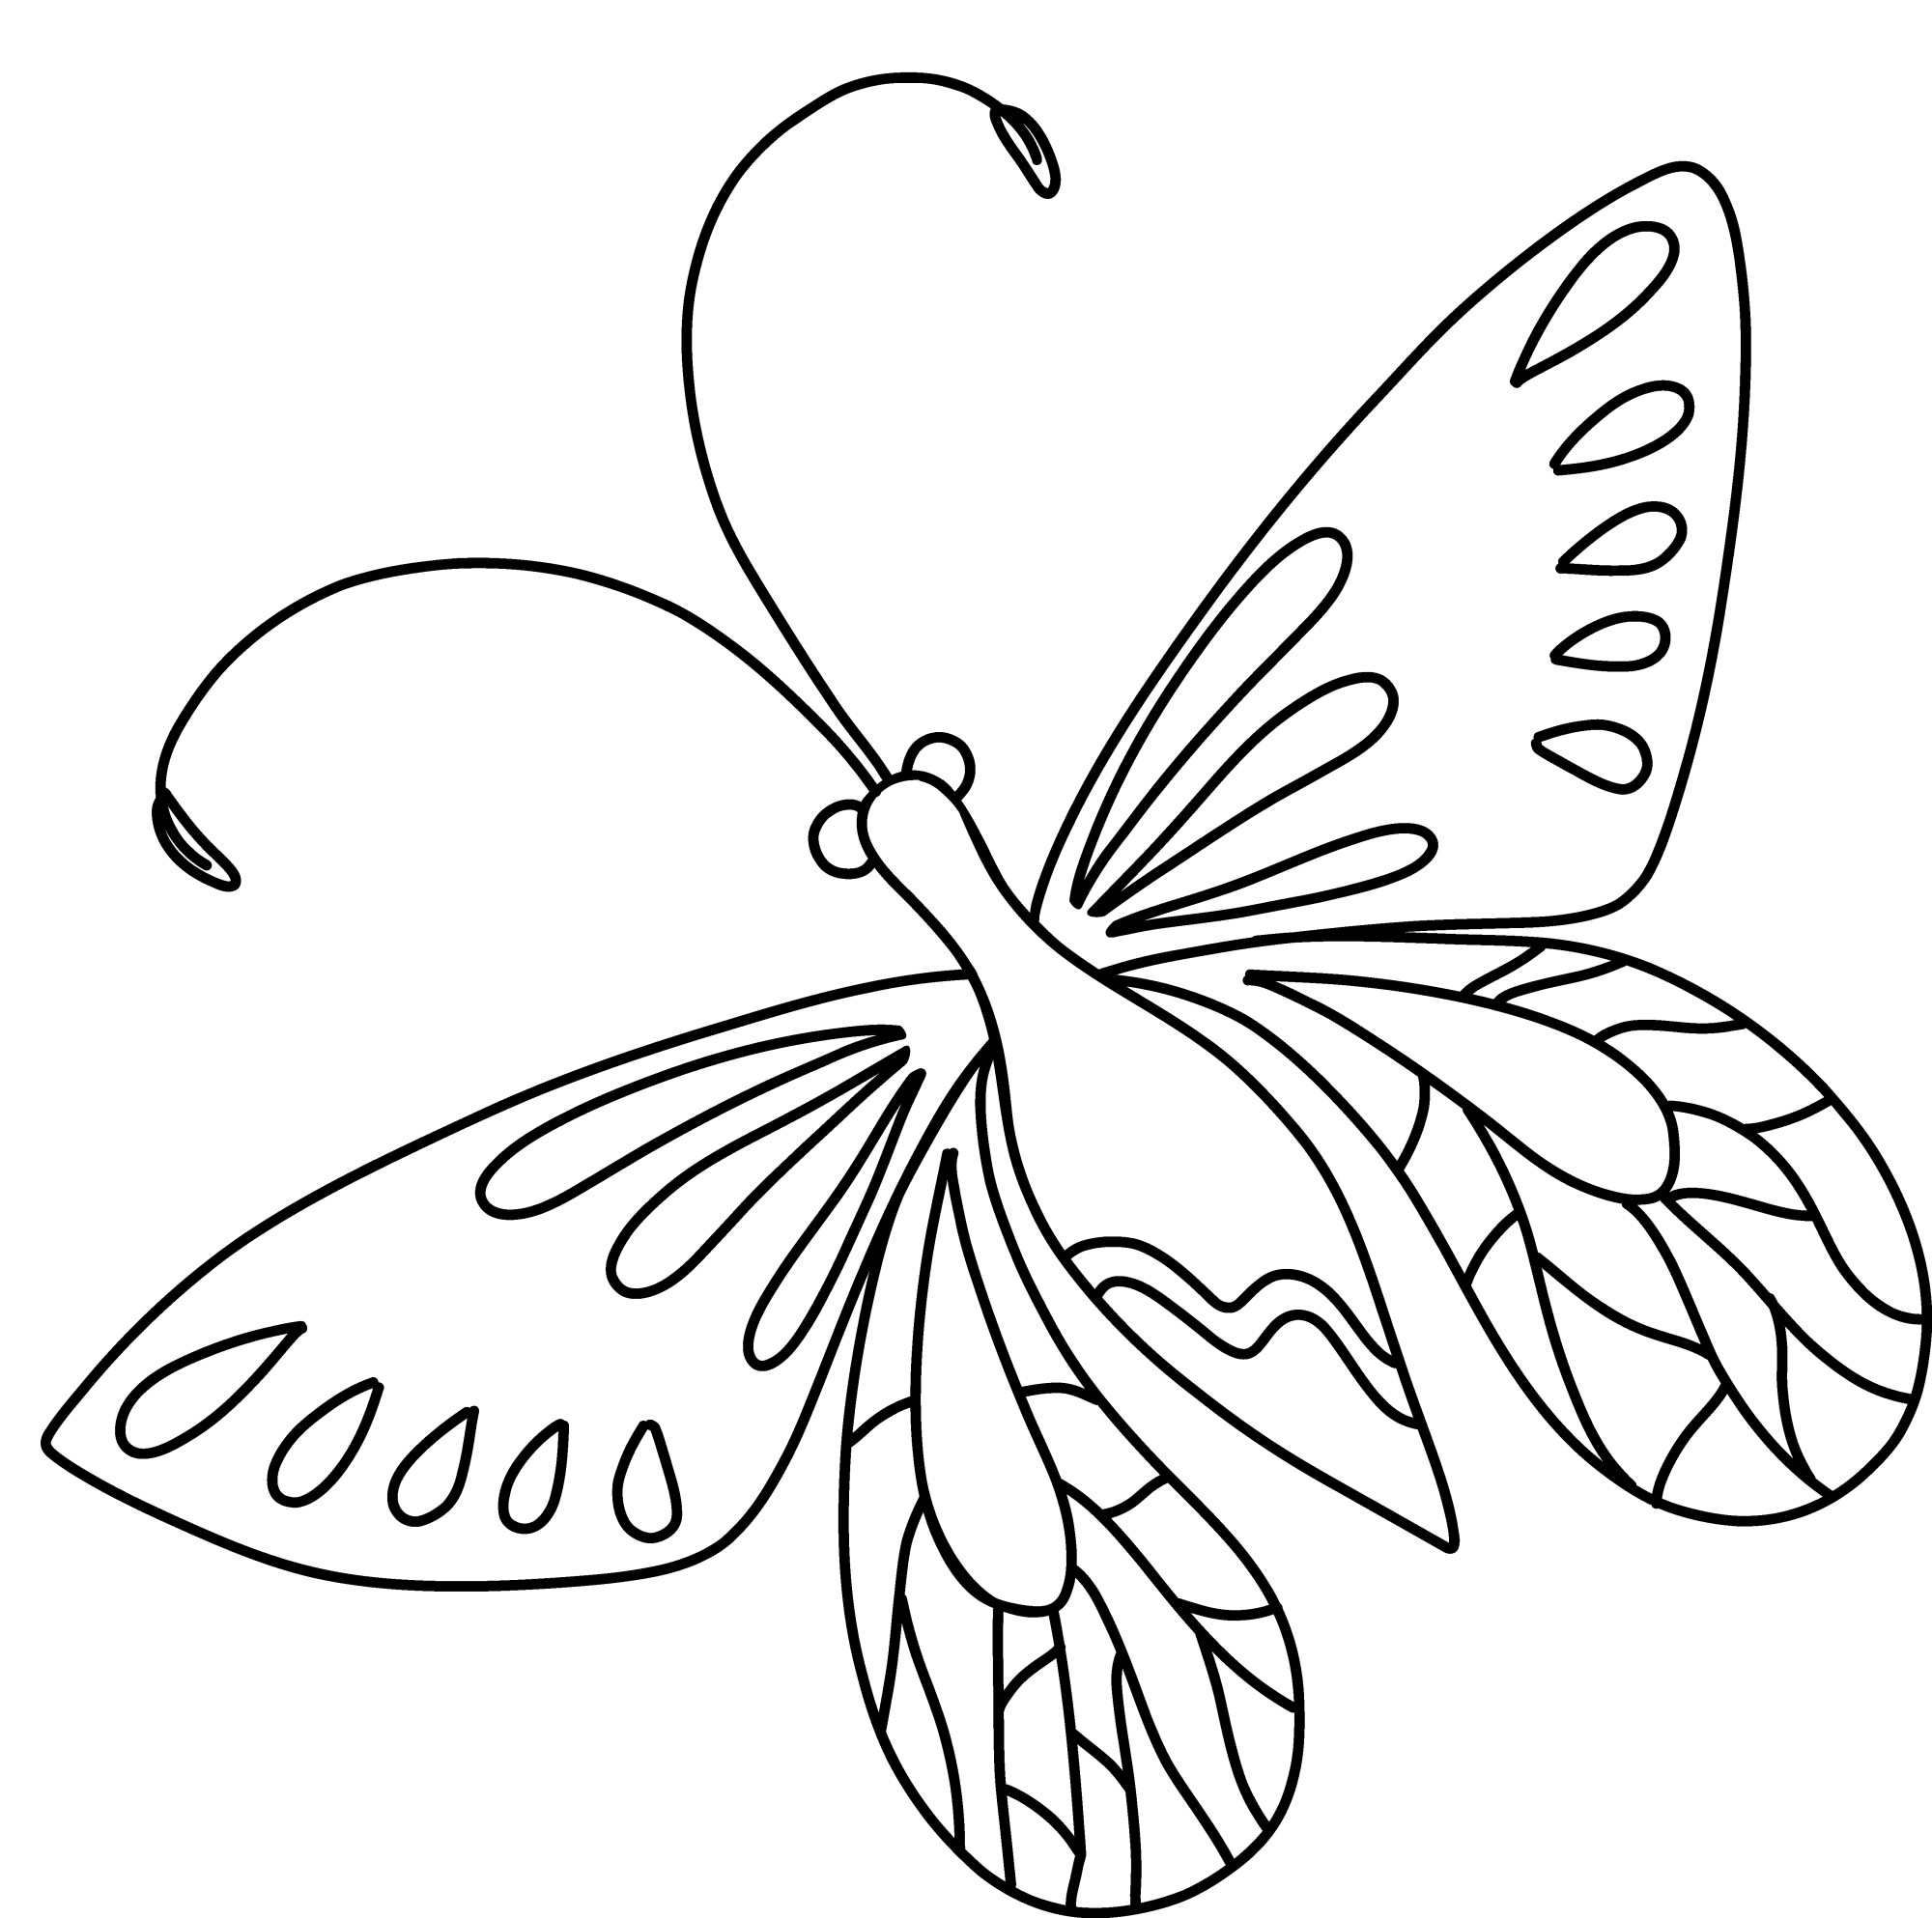 Раскраска для детей: очаровательная бабочка